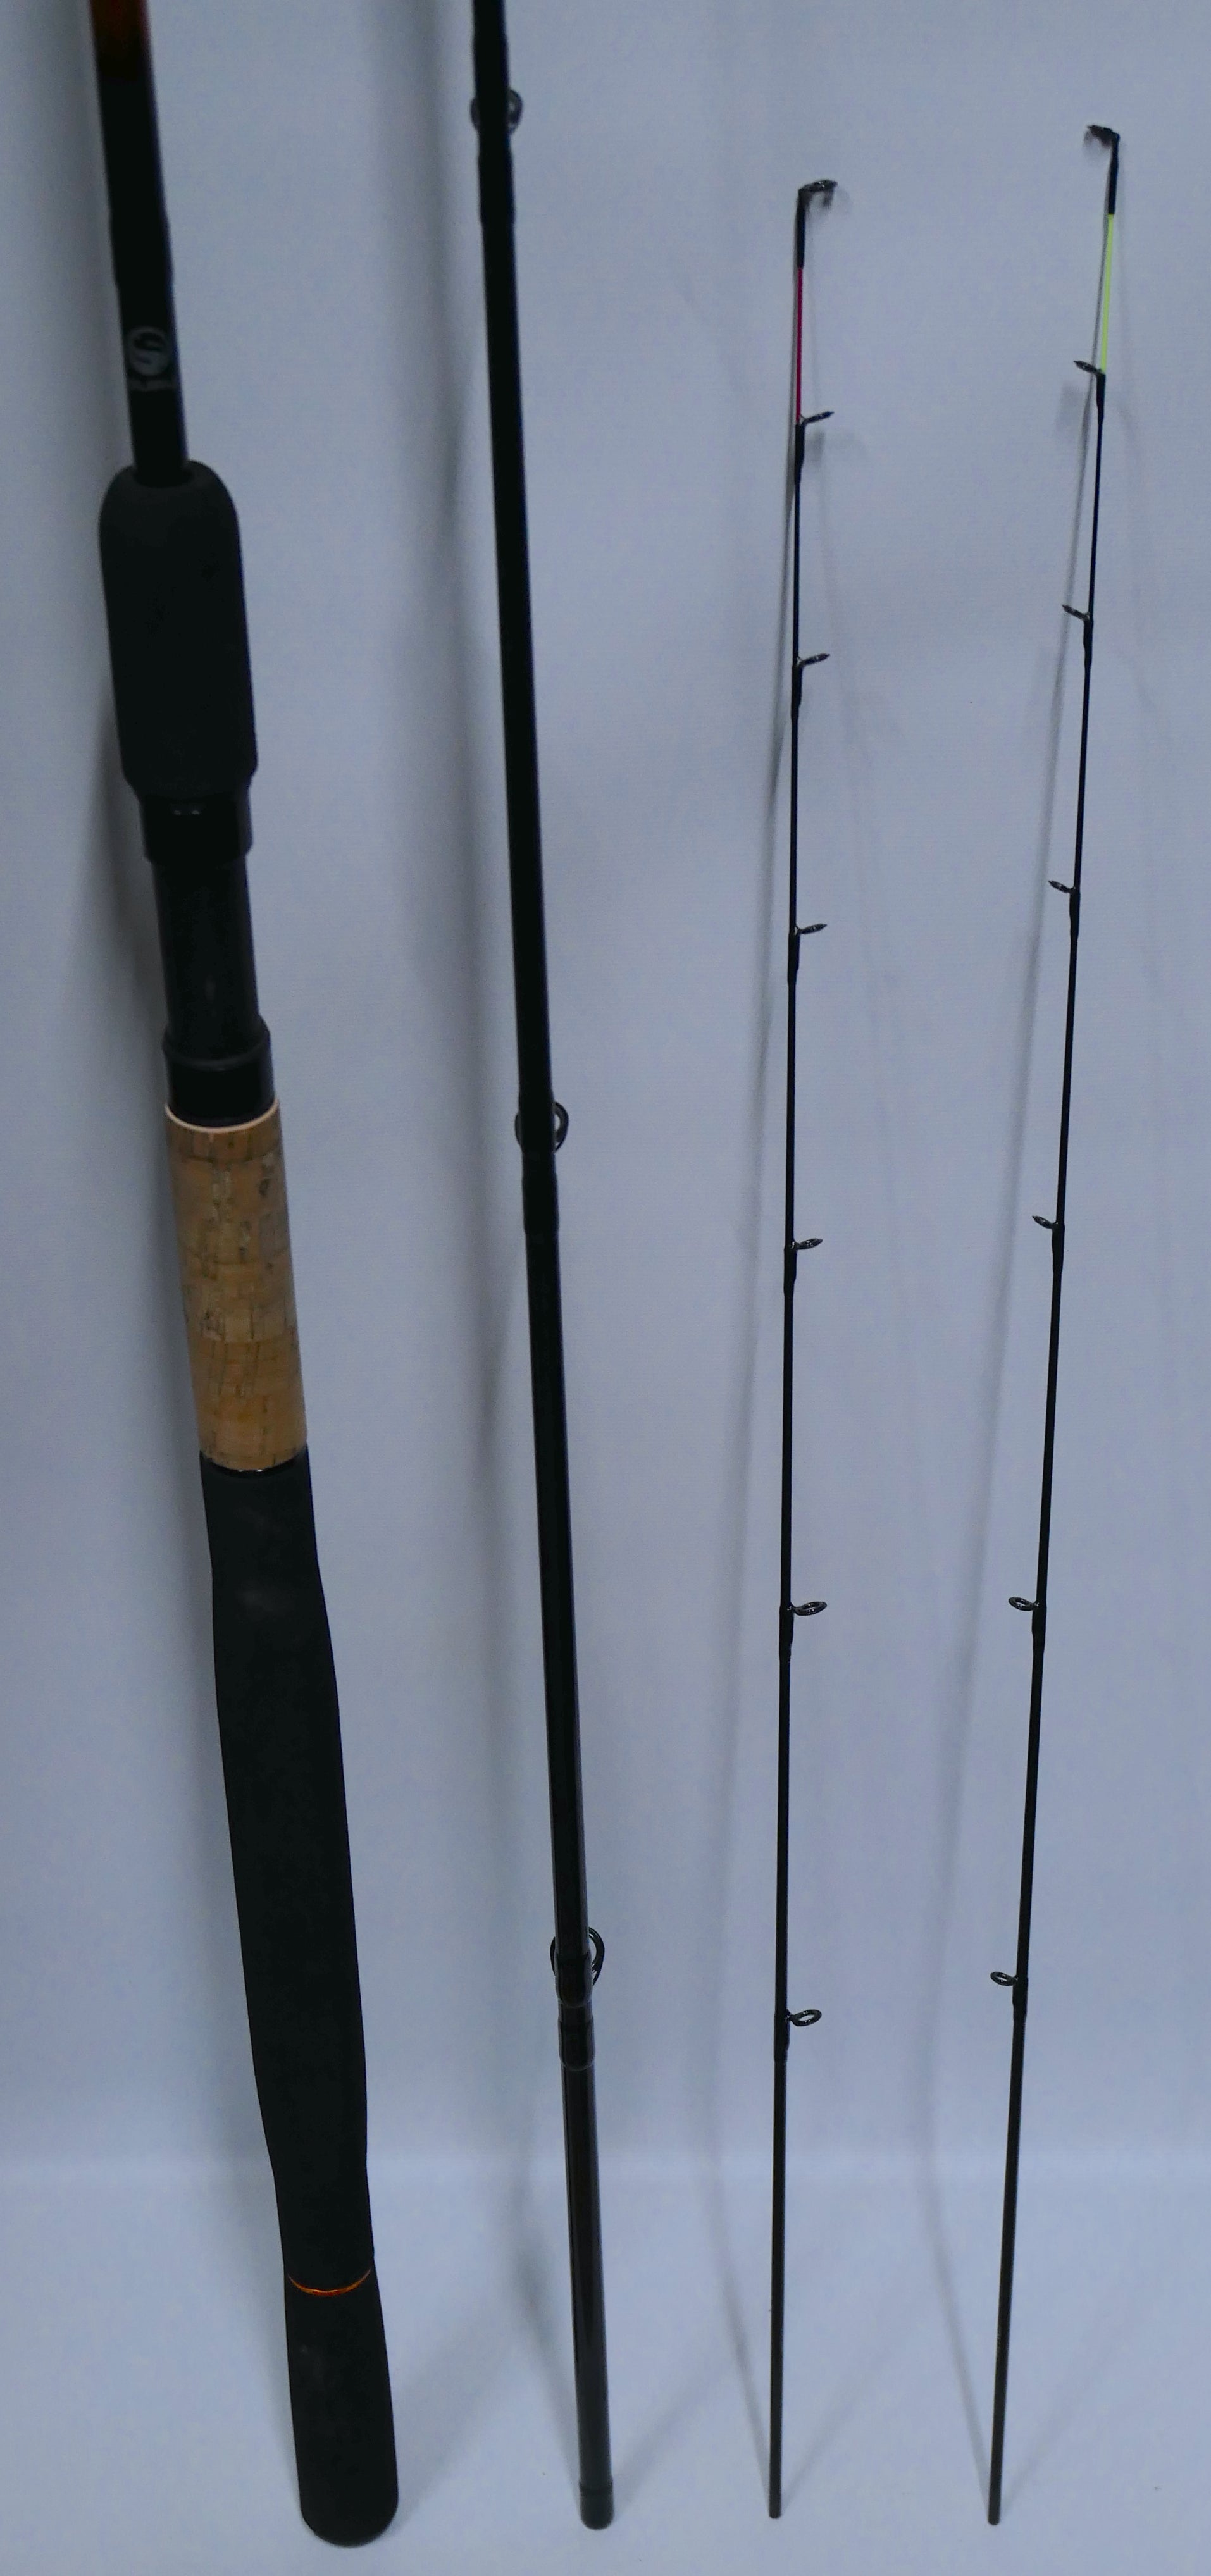 Guru N-Gauge 11ft Feeder Rod – Fish For Tackle